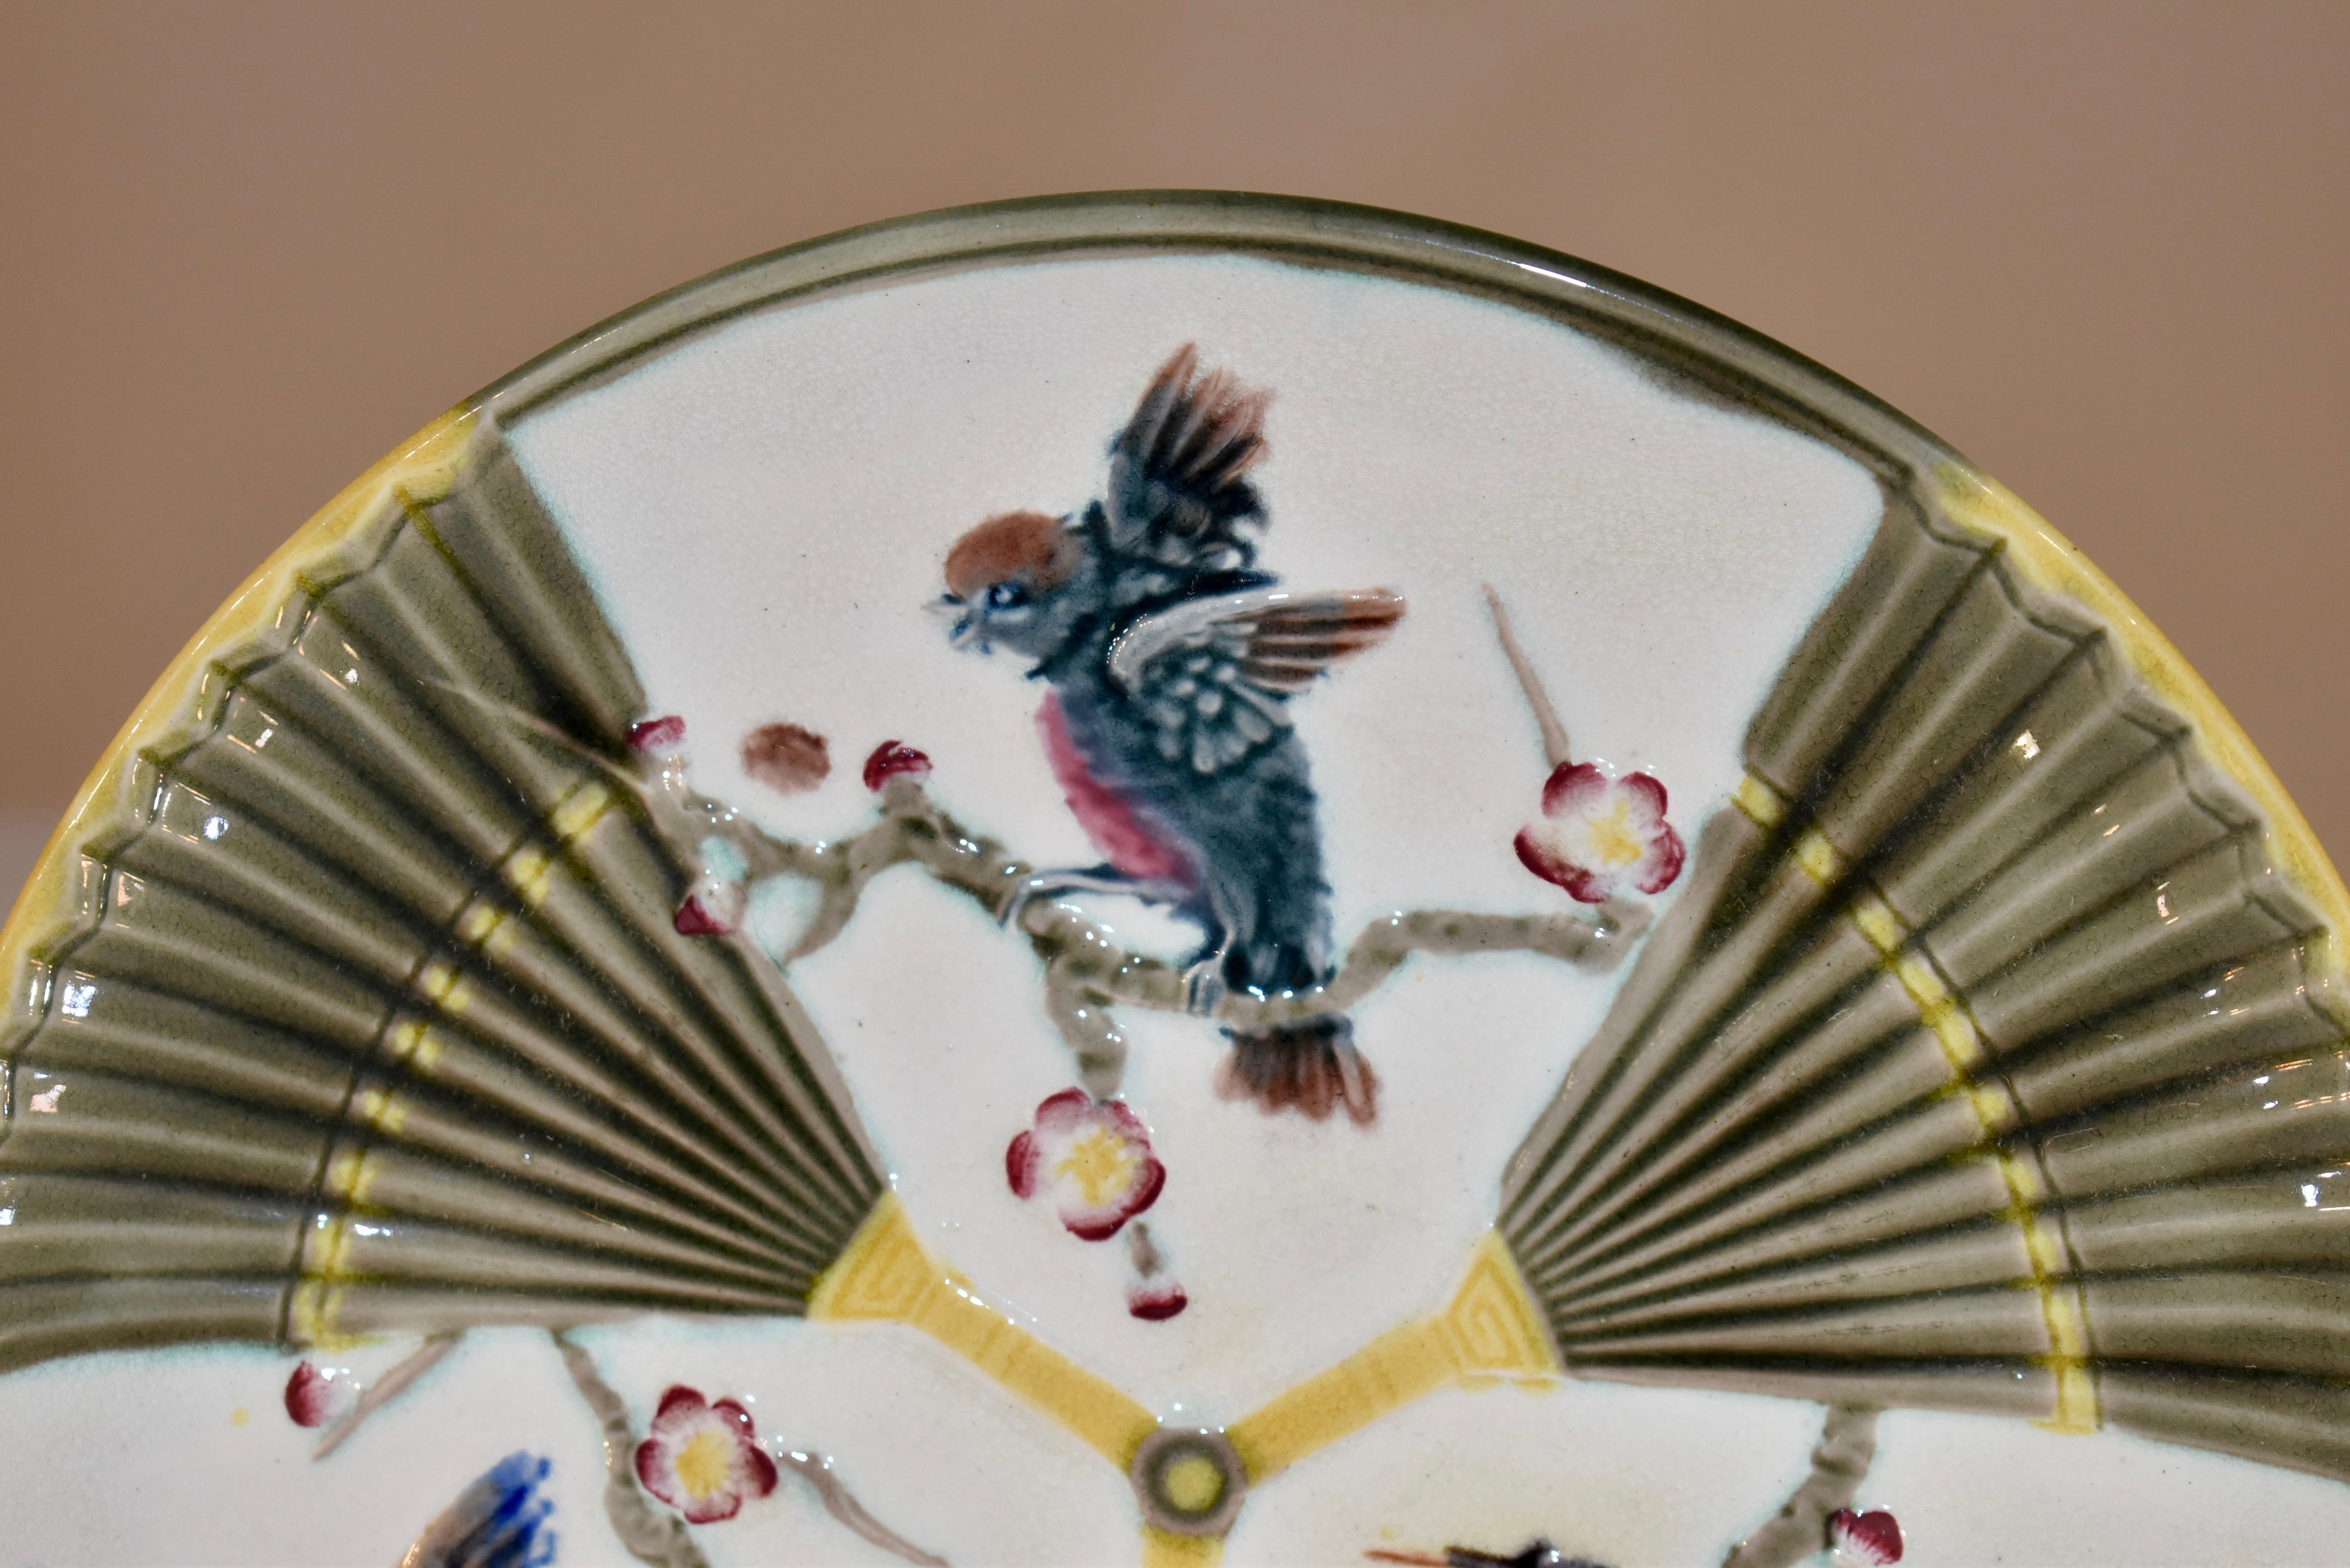 Teller mit Vogel- und Fächermuster aus Majolika aus dem 19. Jahrhundert in England. Auf der Rückseite des Tellers befindet sich eine eingeprägte WEDGWOOD-Marke. Die Farben sind leuchtend und schön.